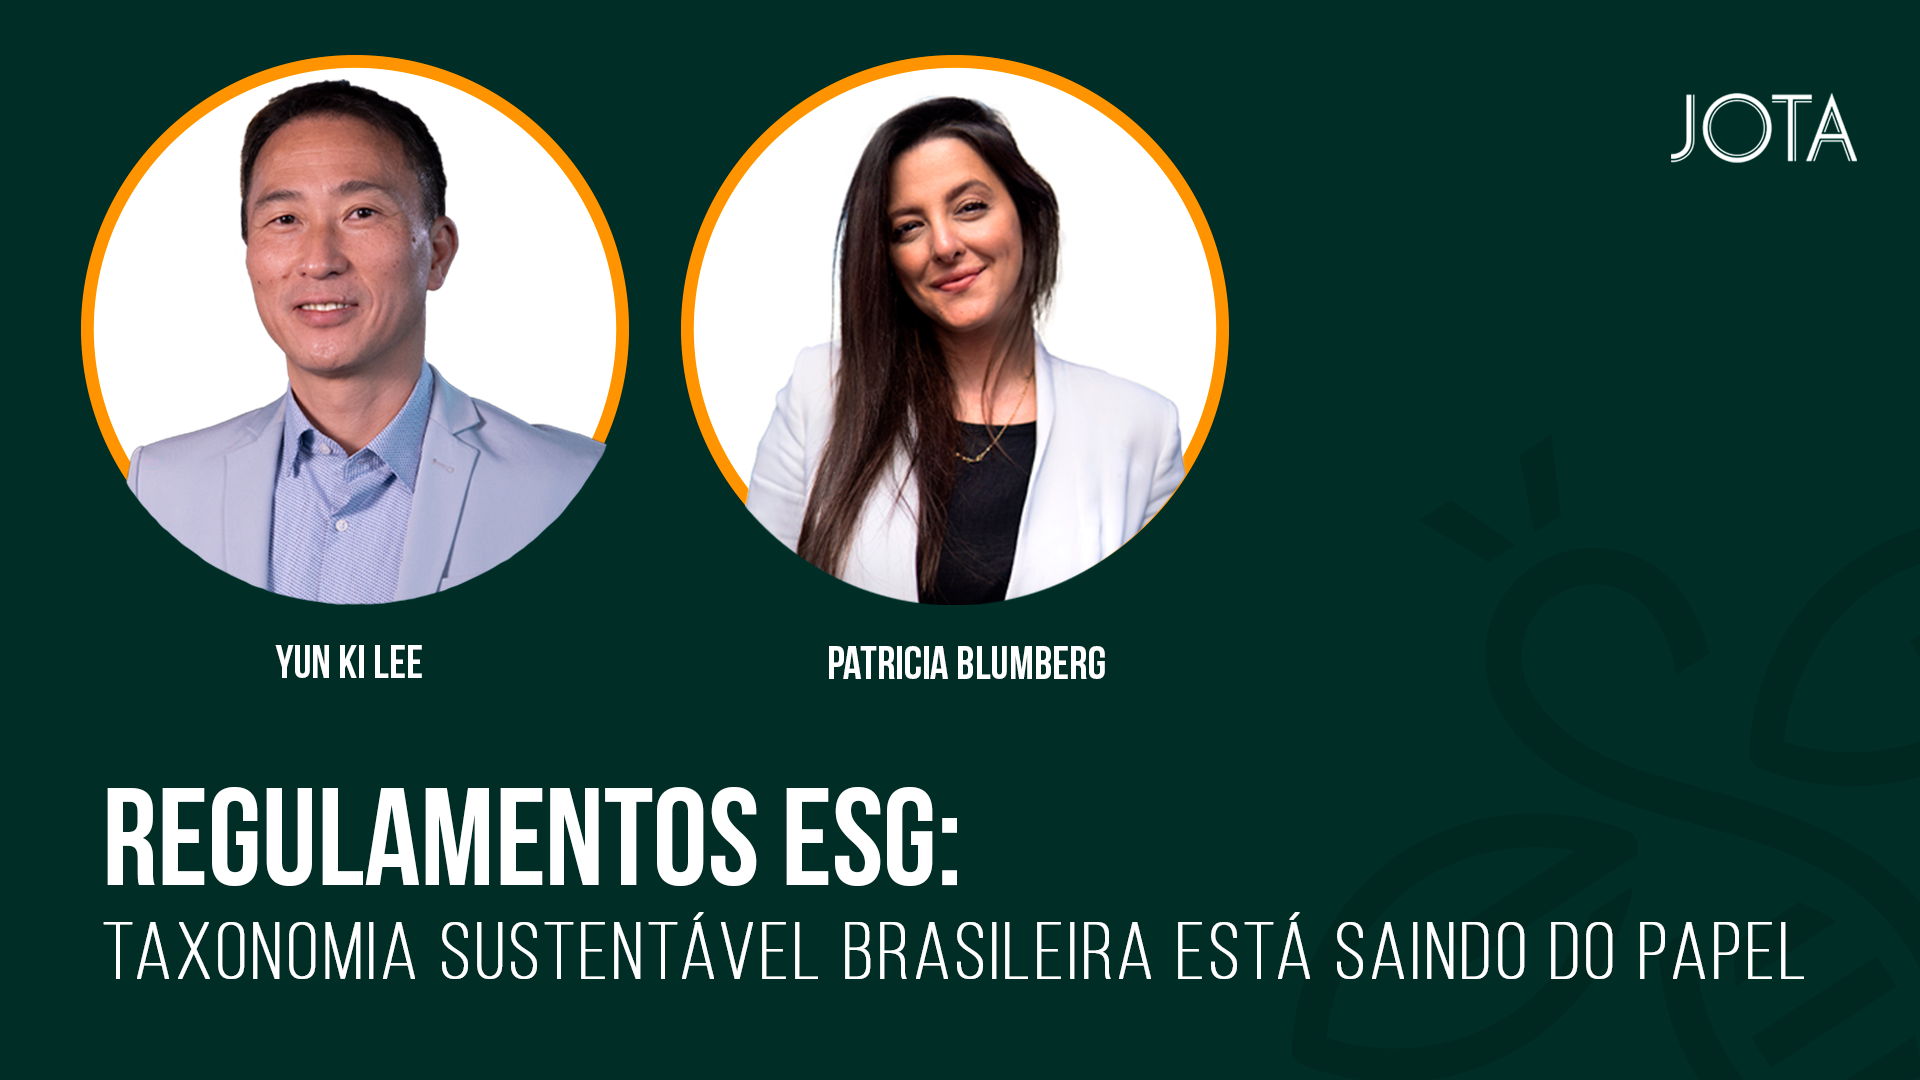 Regulamentos ESG: taxonomia sustentável brasileira está saindo do papel